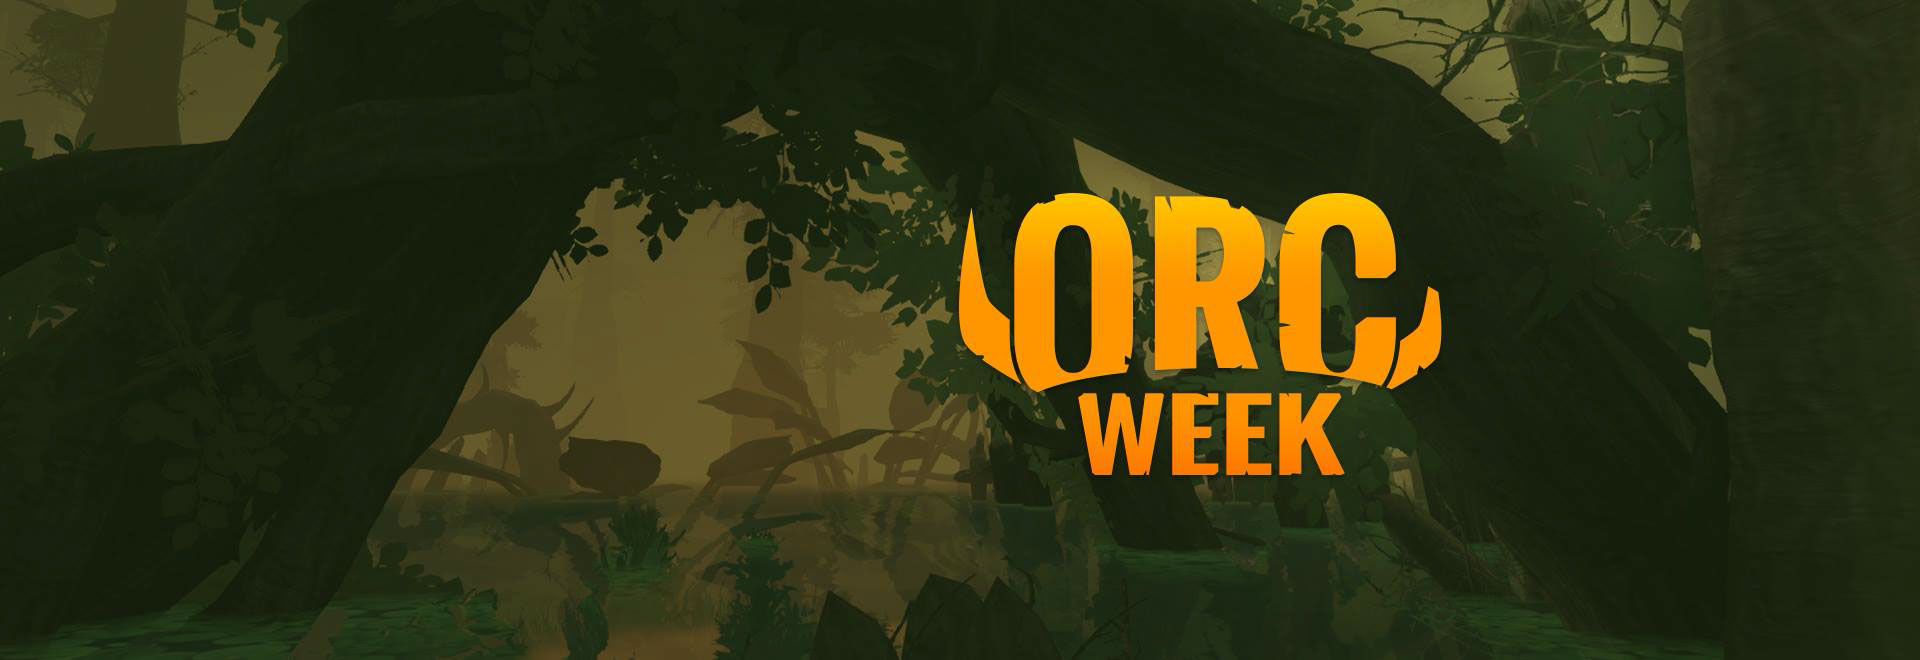 orcweek1